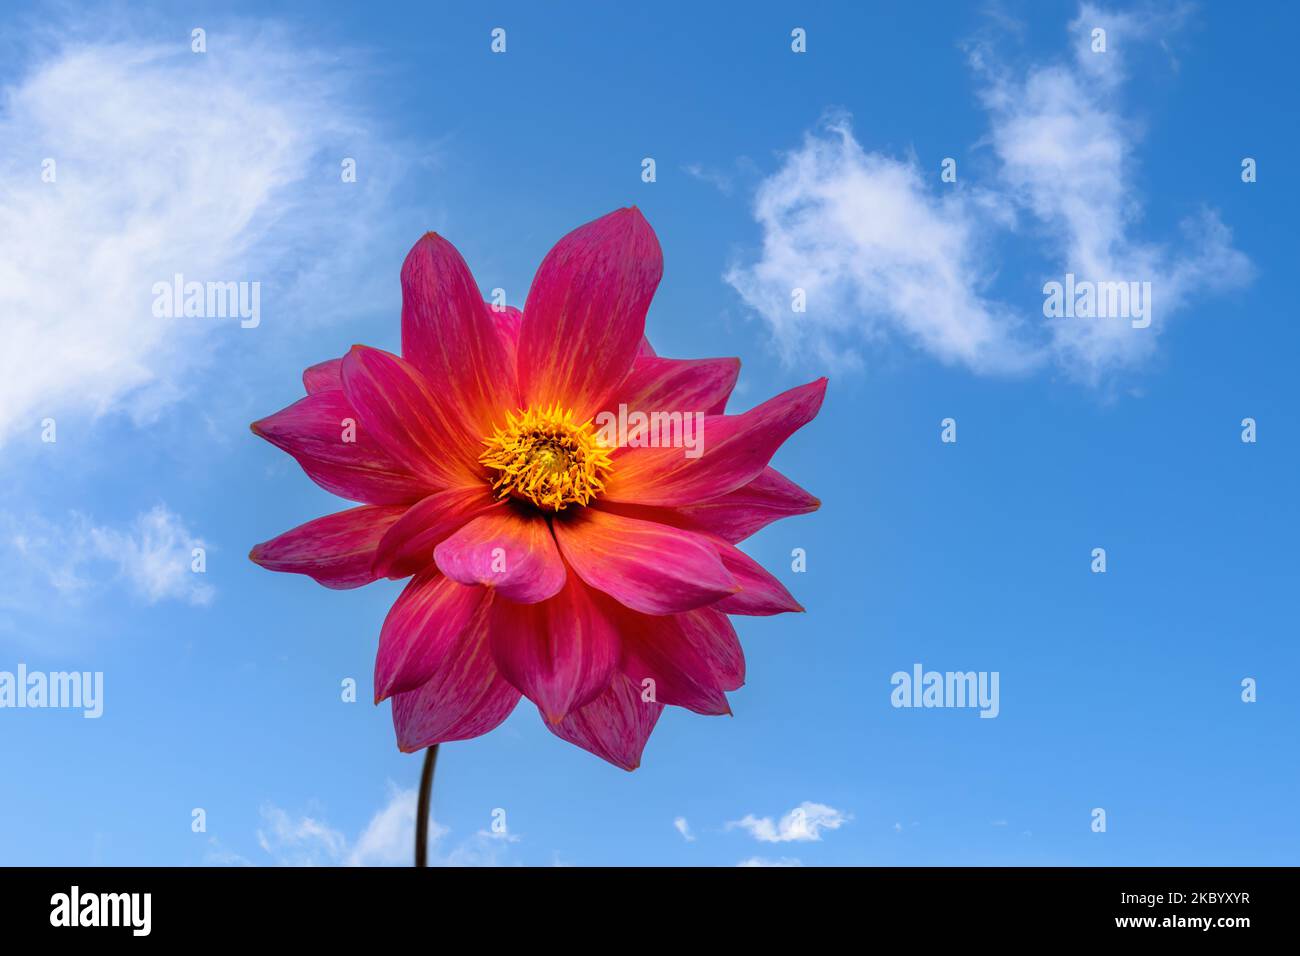 Closeup of a dahnlia flower blossom against blue sky Stock Photo